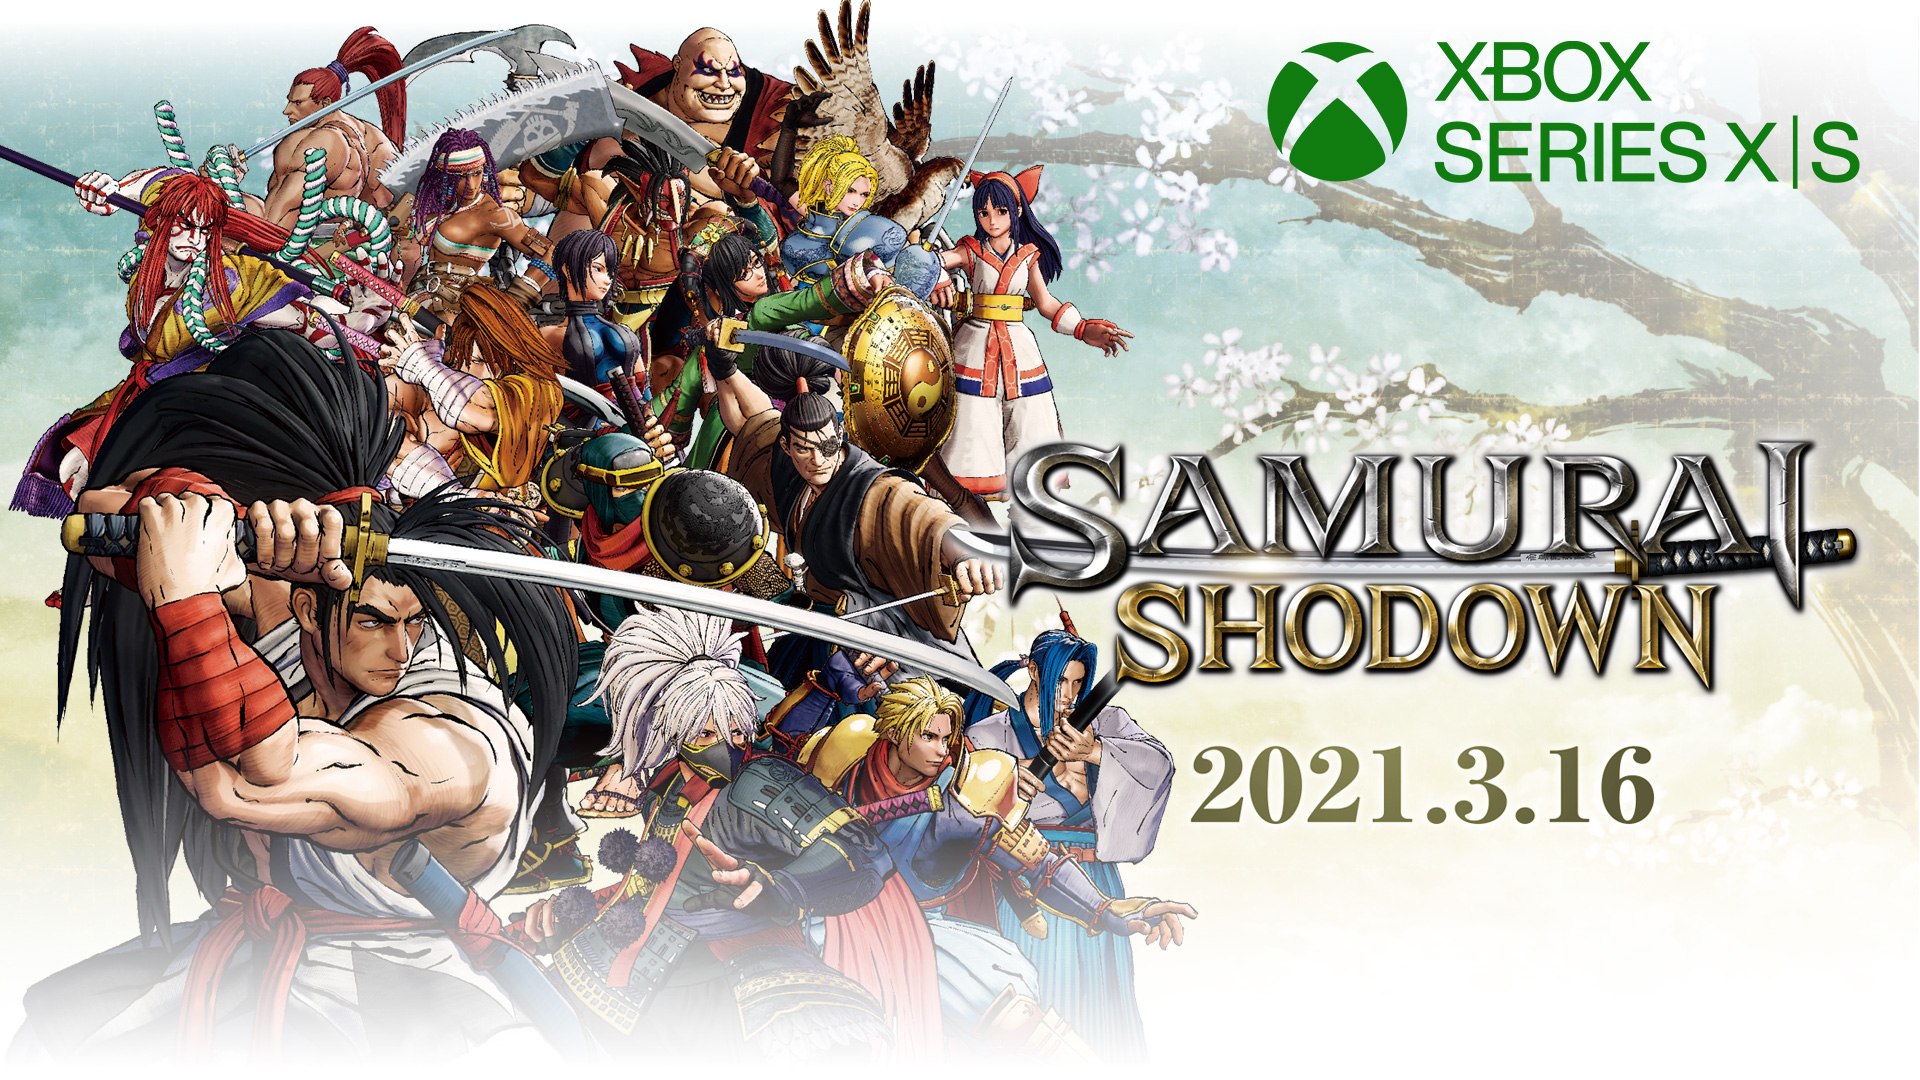 Edycja specjalna SAMURAI SHODOWN Xbox Series X|S